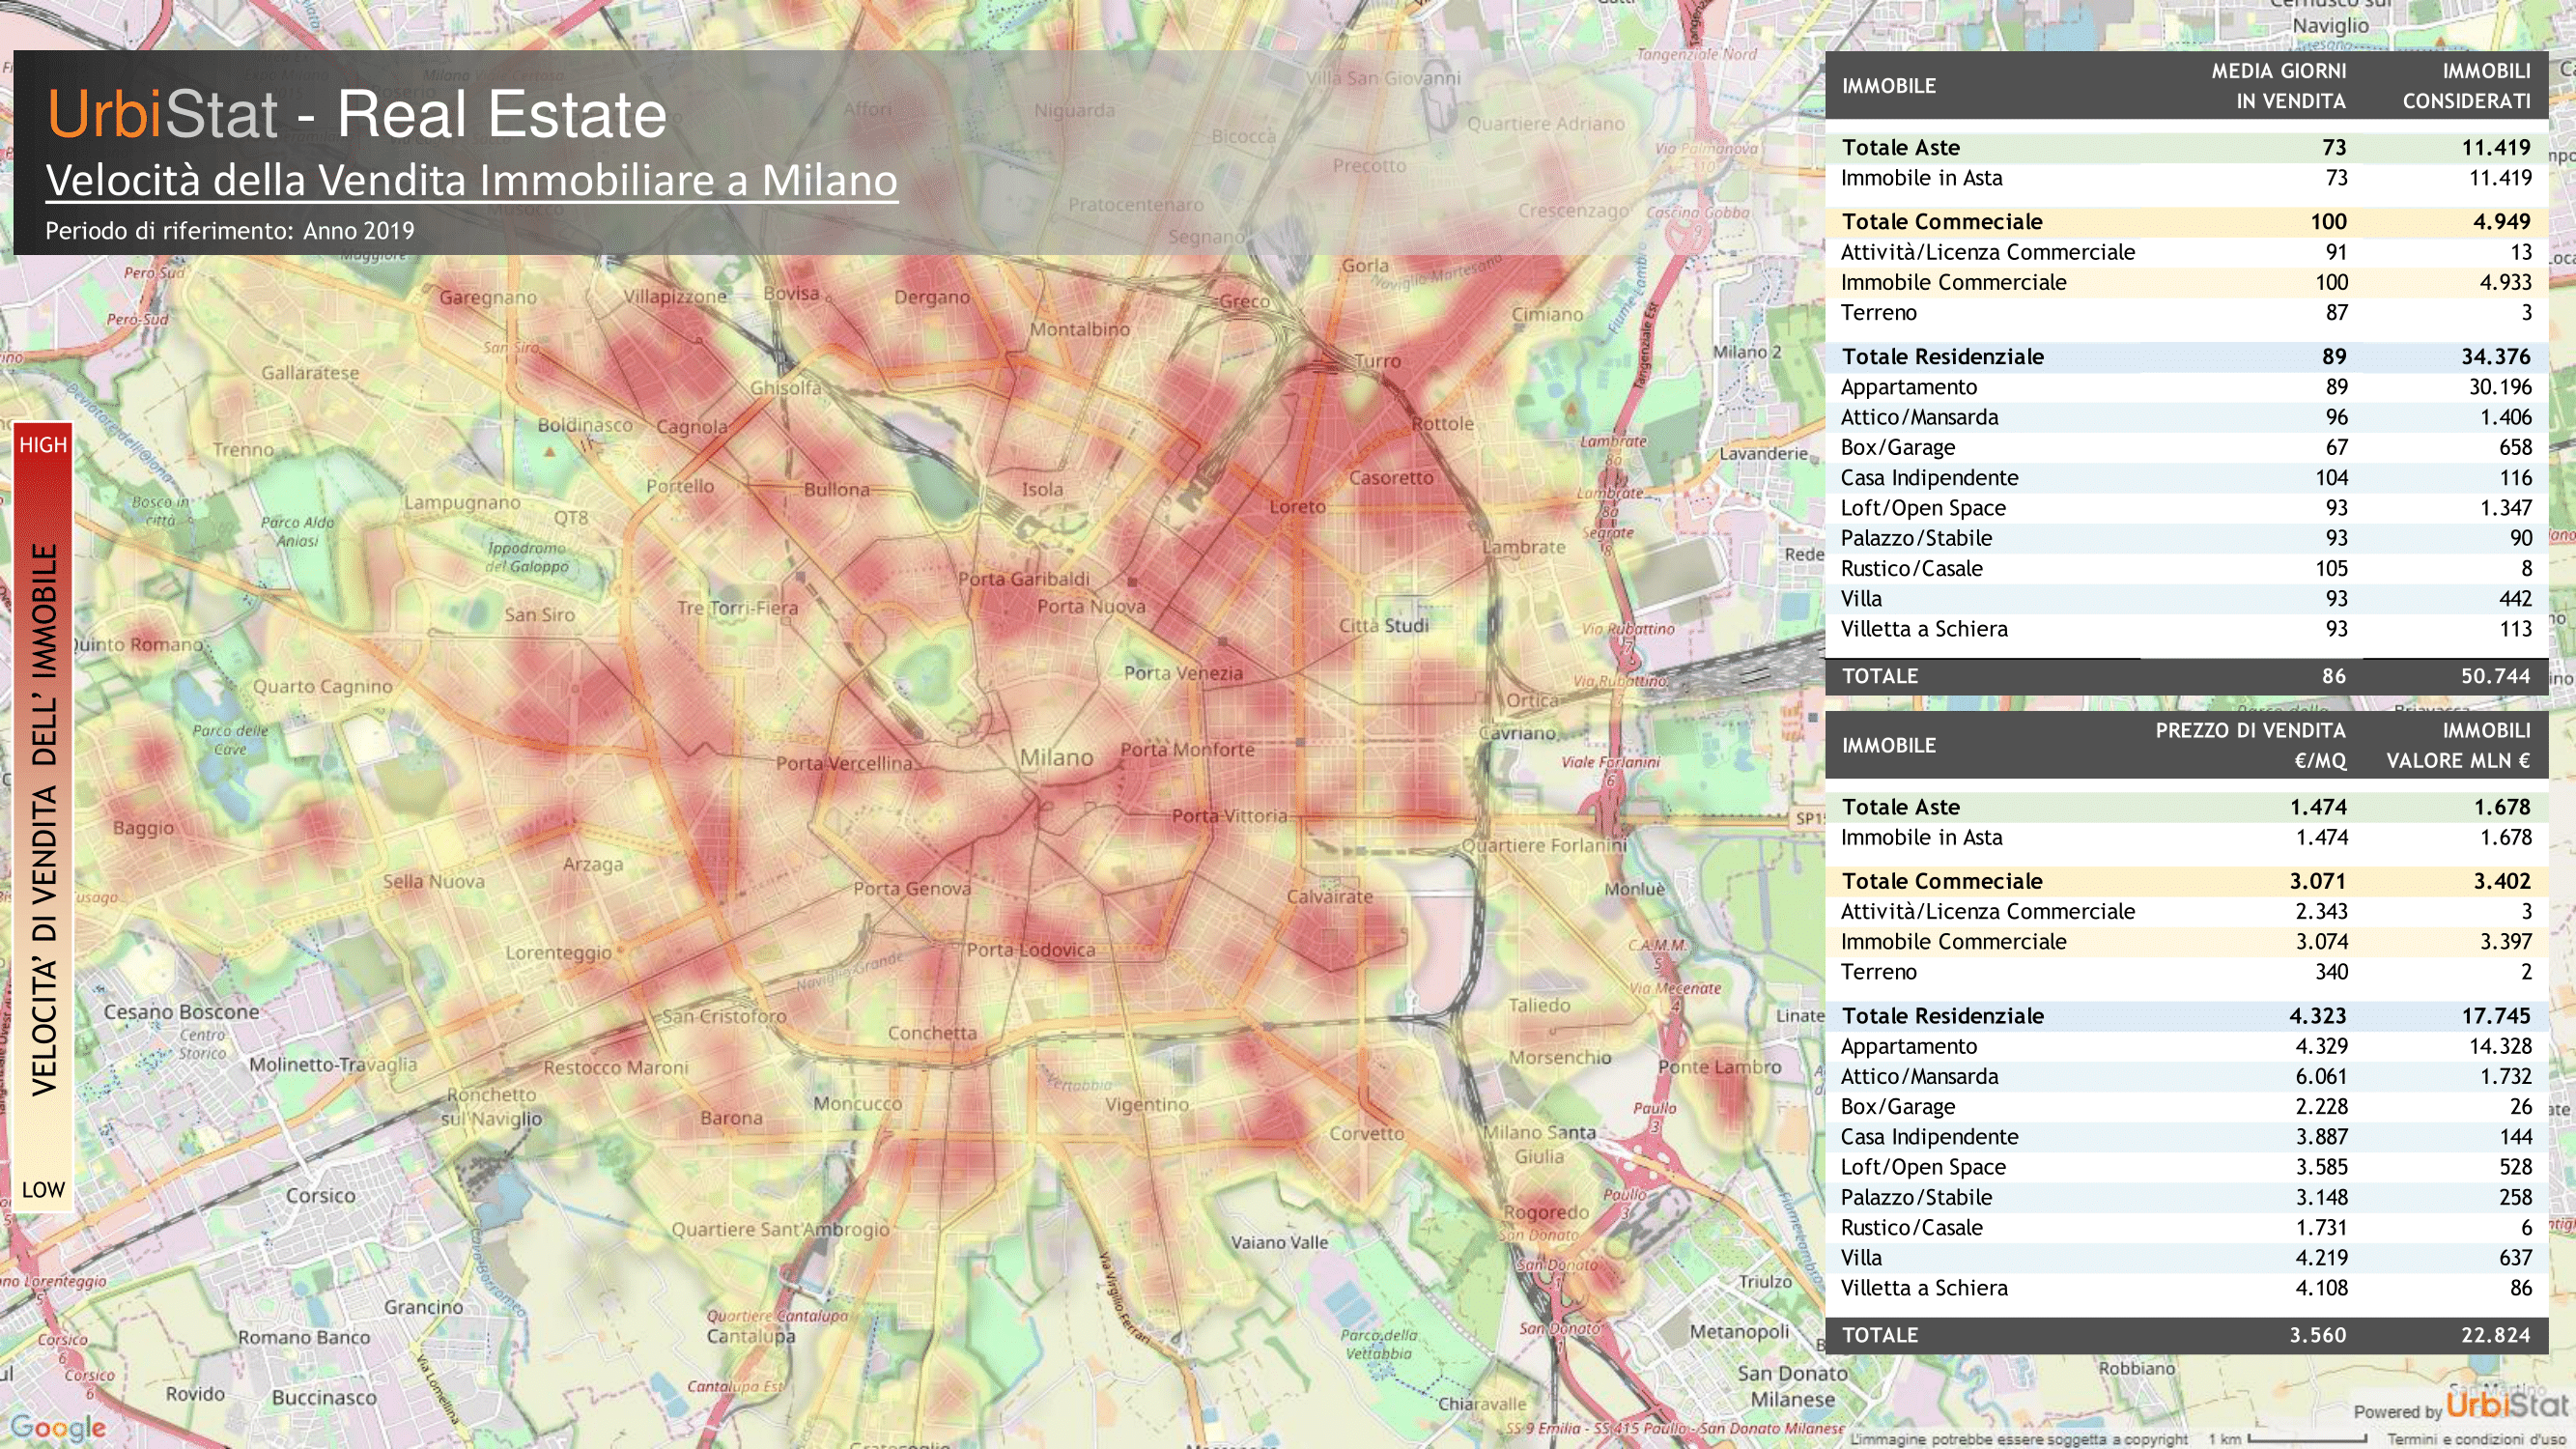 UrbiStat Real Estate: Velocità della vendita immobiliare nel comune di Milano